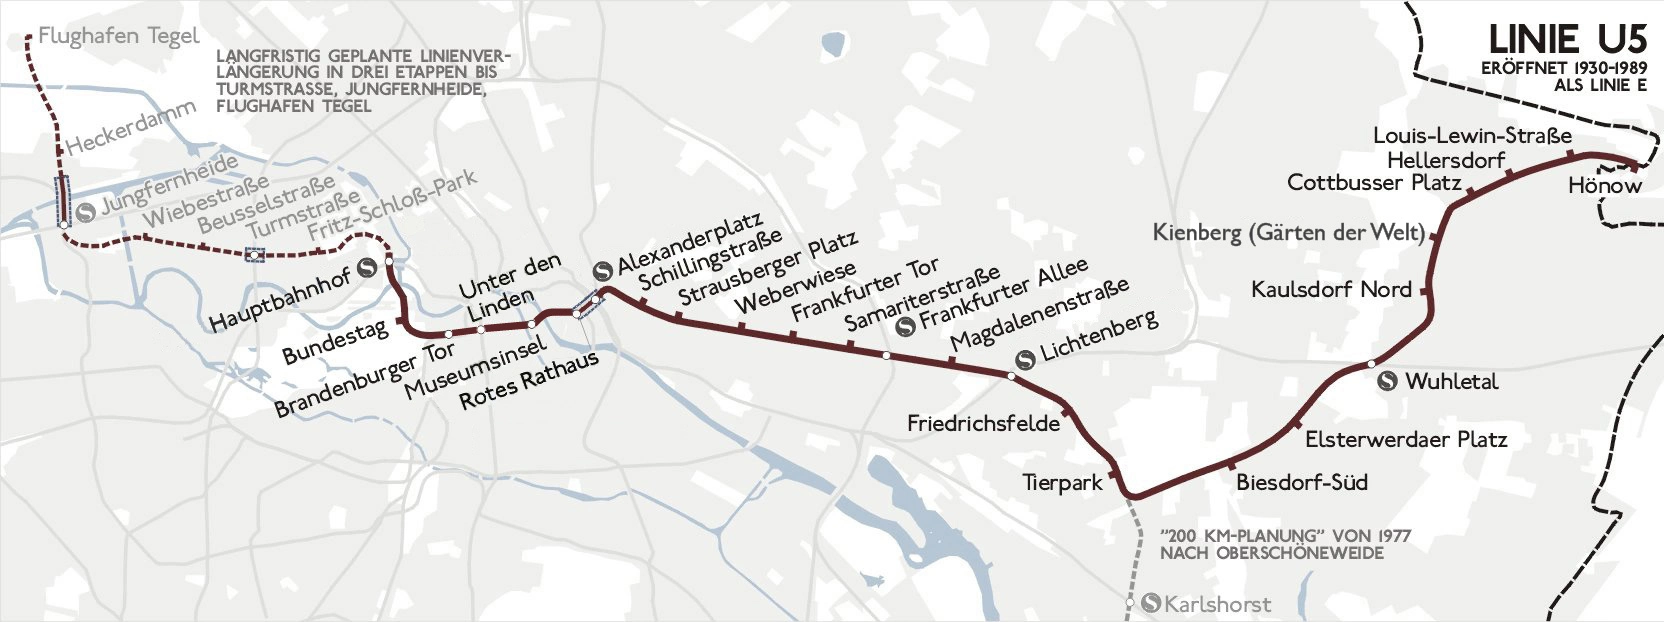 Ligne 5 du métro Berlinois